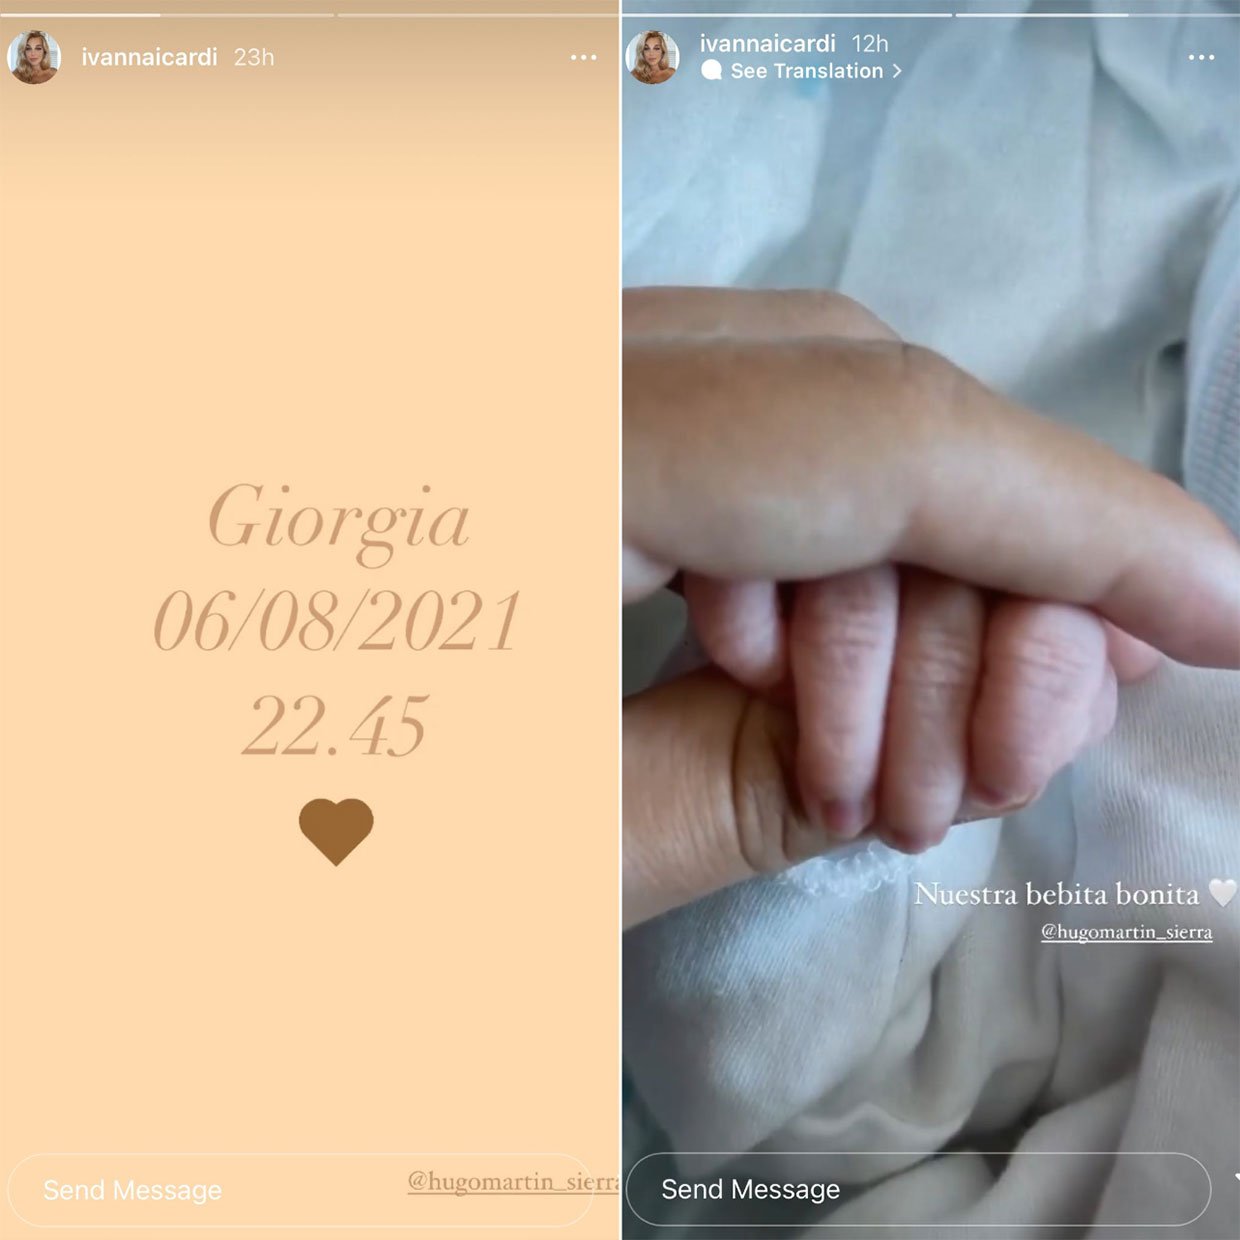 Ivana Icardi ha compartido su felicidad con sus seguidores. Instagram: @ivannaicardi